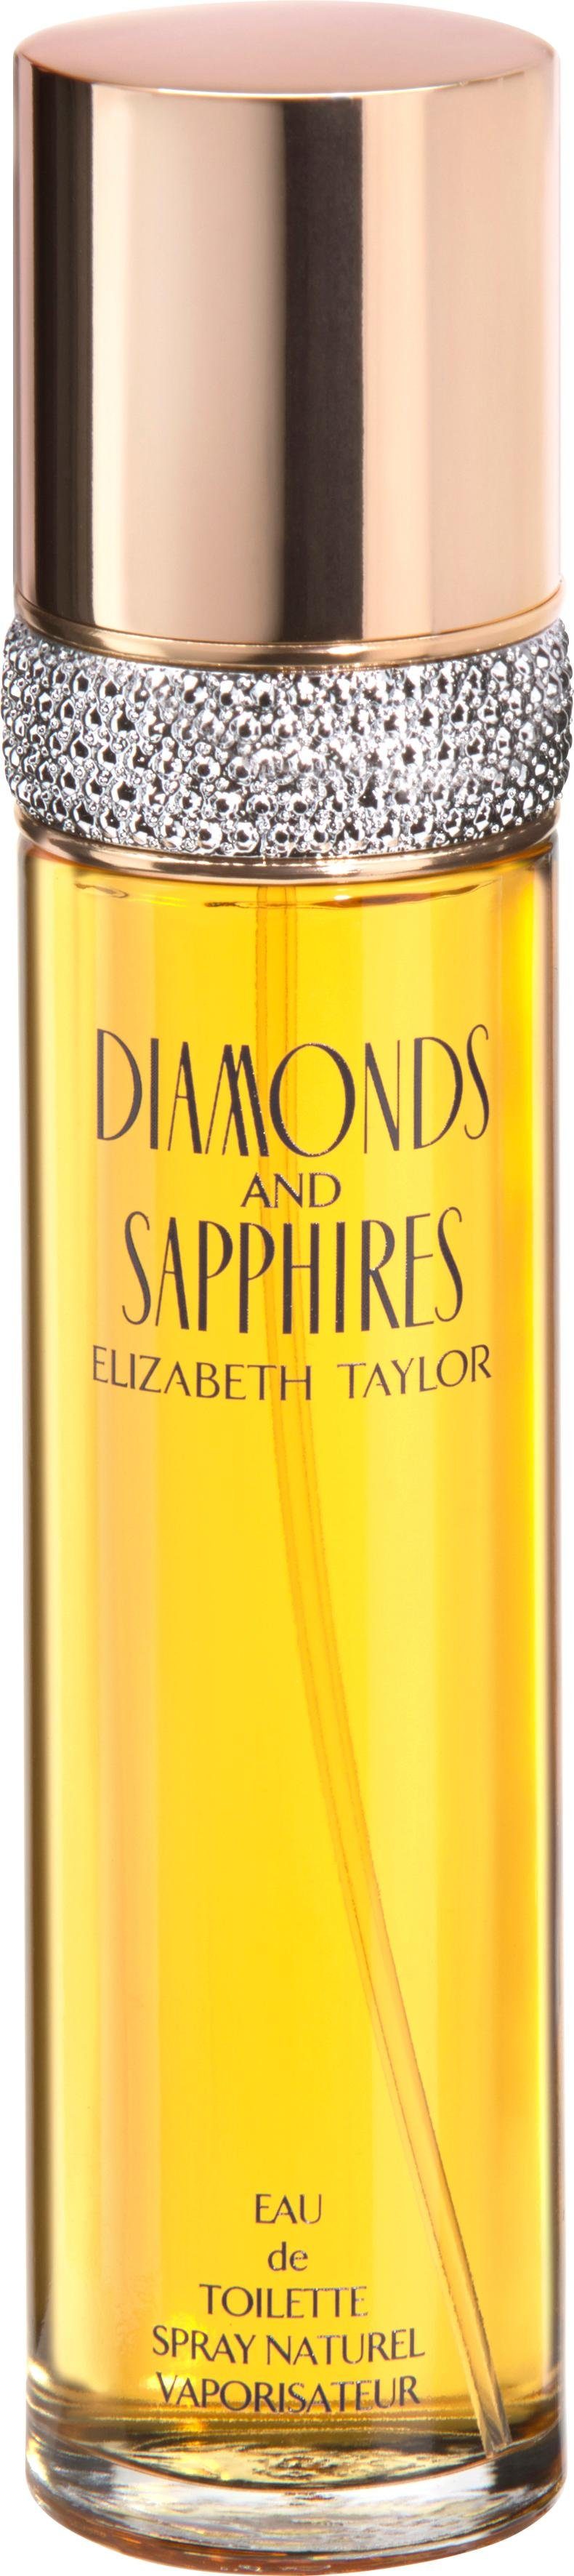 Sapphires & Toilette Elizabeth de Diamonds Eau Taylor